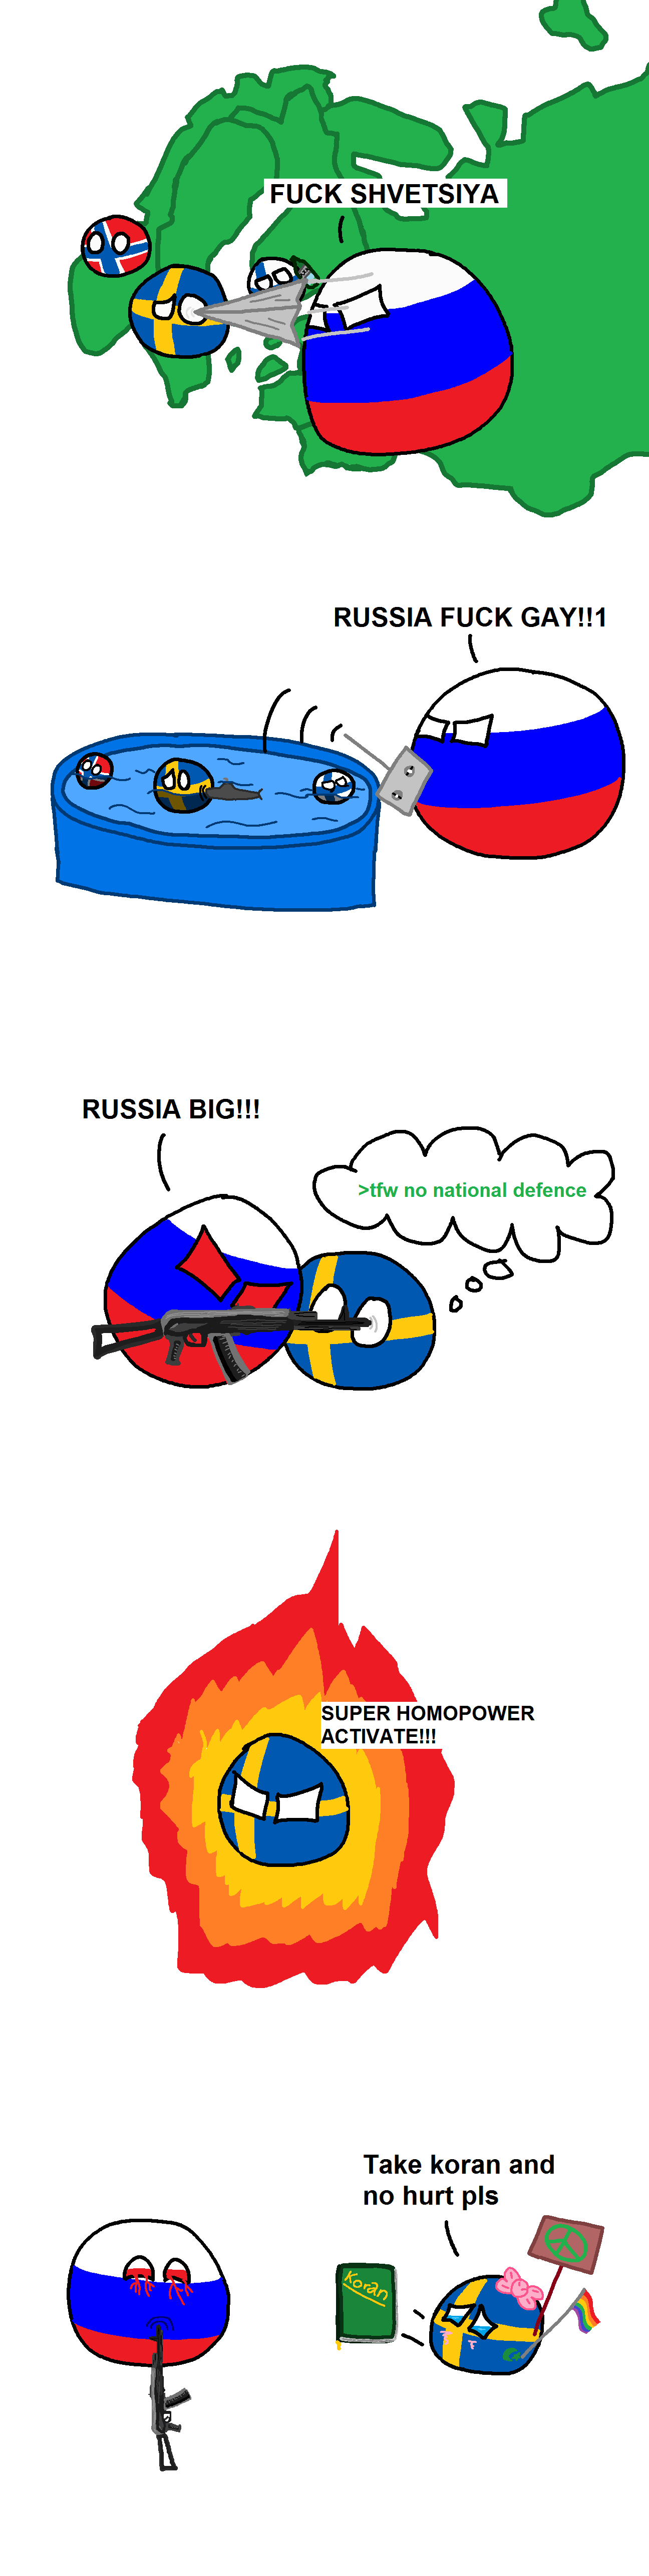 Sweden solves problems